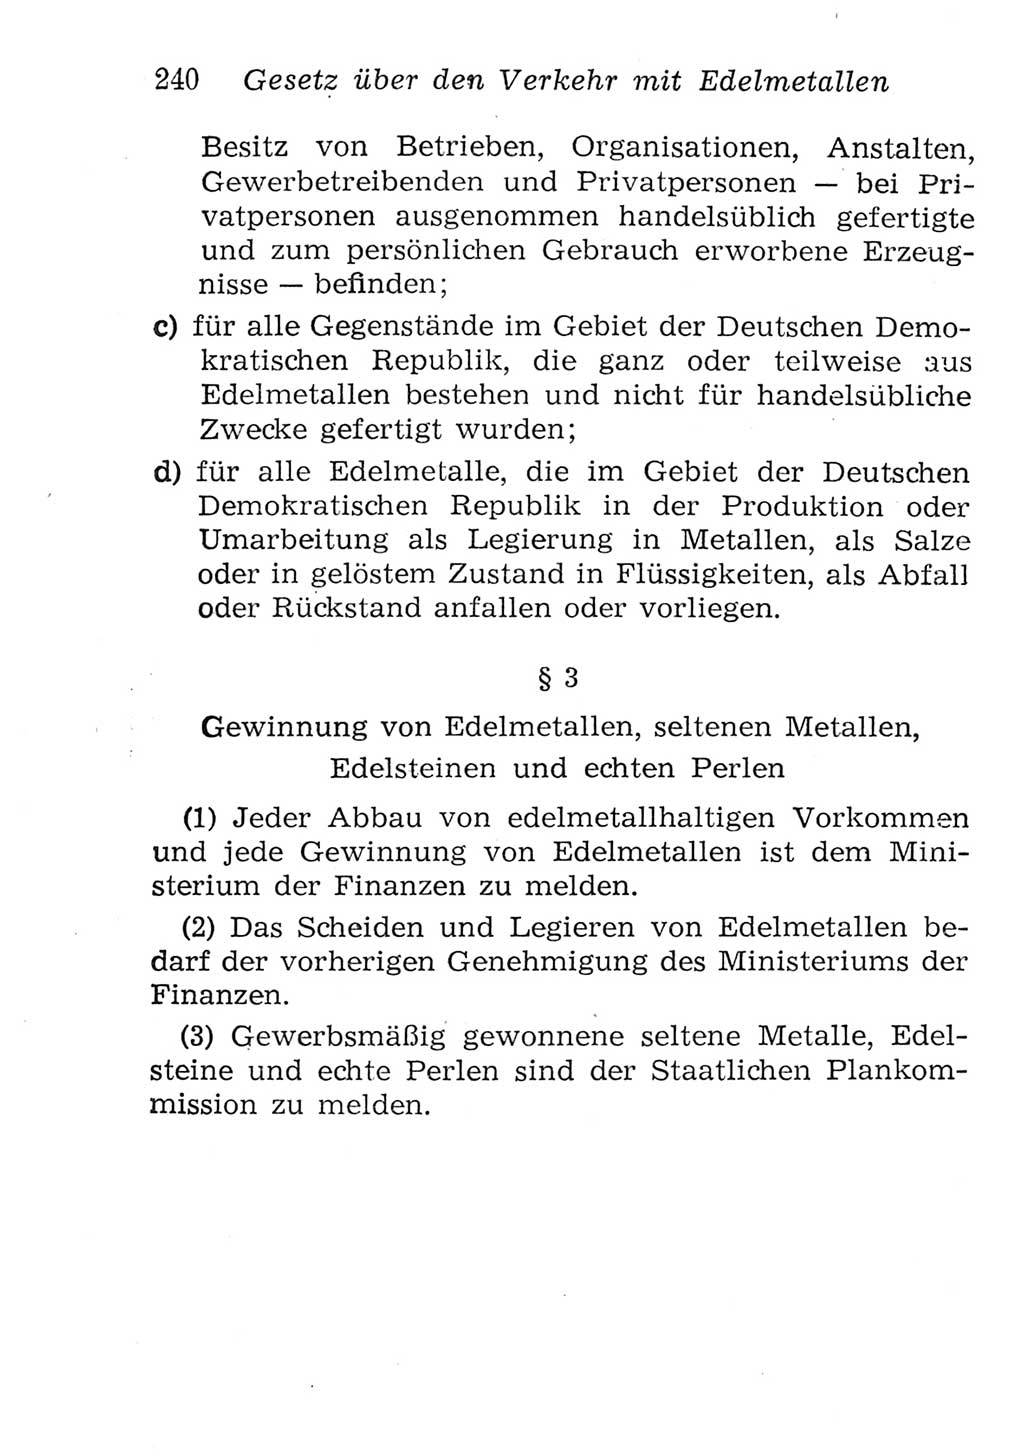 Strafgesetzbuch (StGB) und andere Strafgesetze [Deutsche Demokratische Republik (DDR)] 1957, Seite 240 (StGB Strafges. DDR 1957, S. 240)